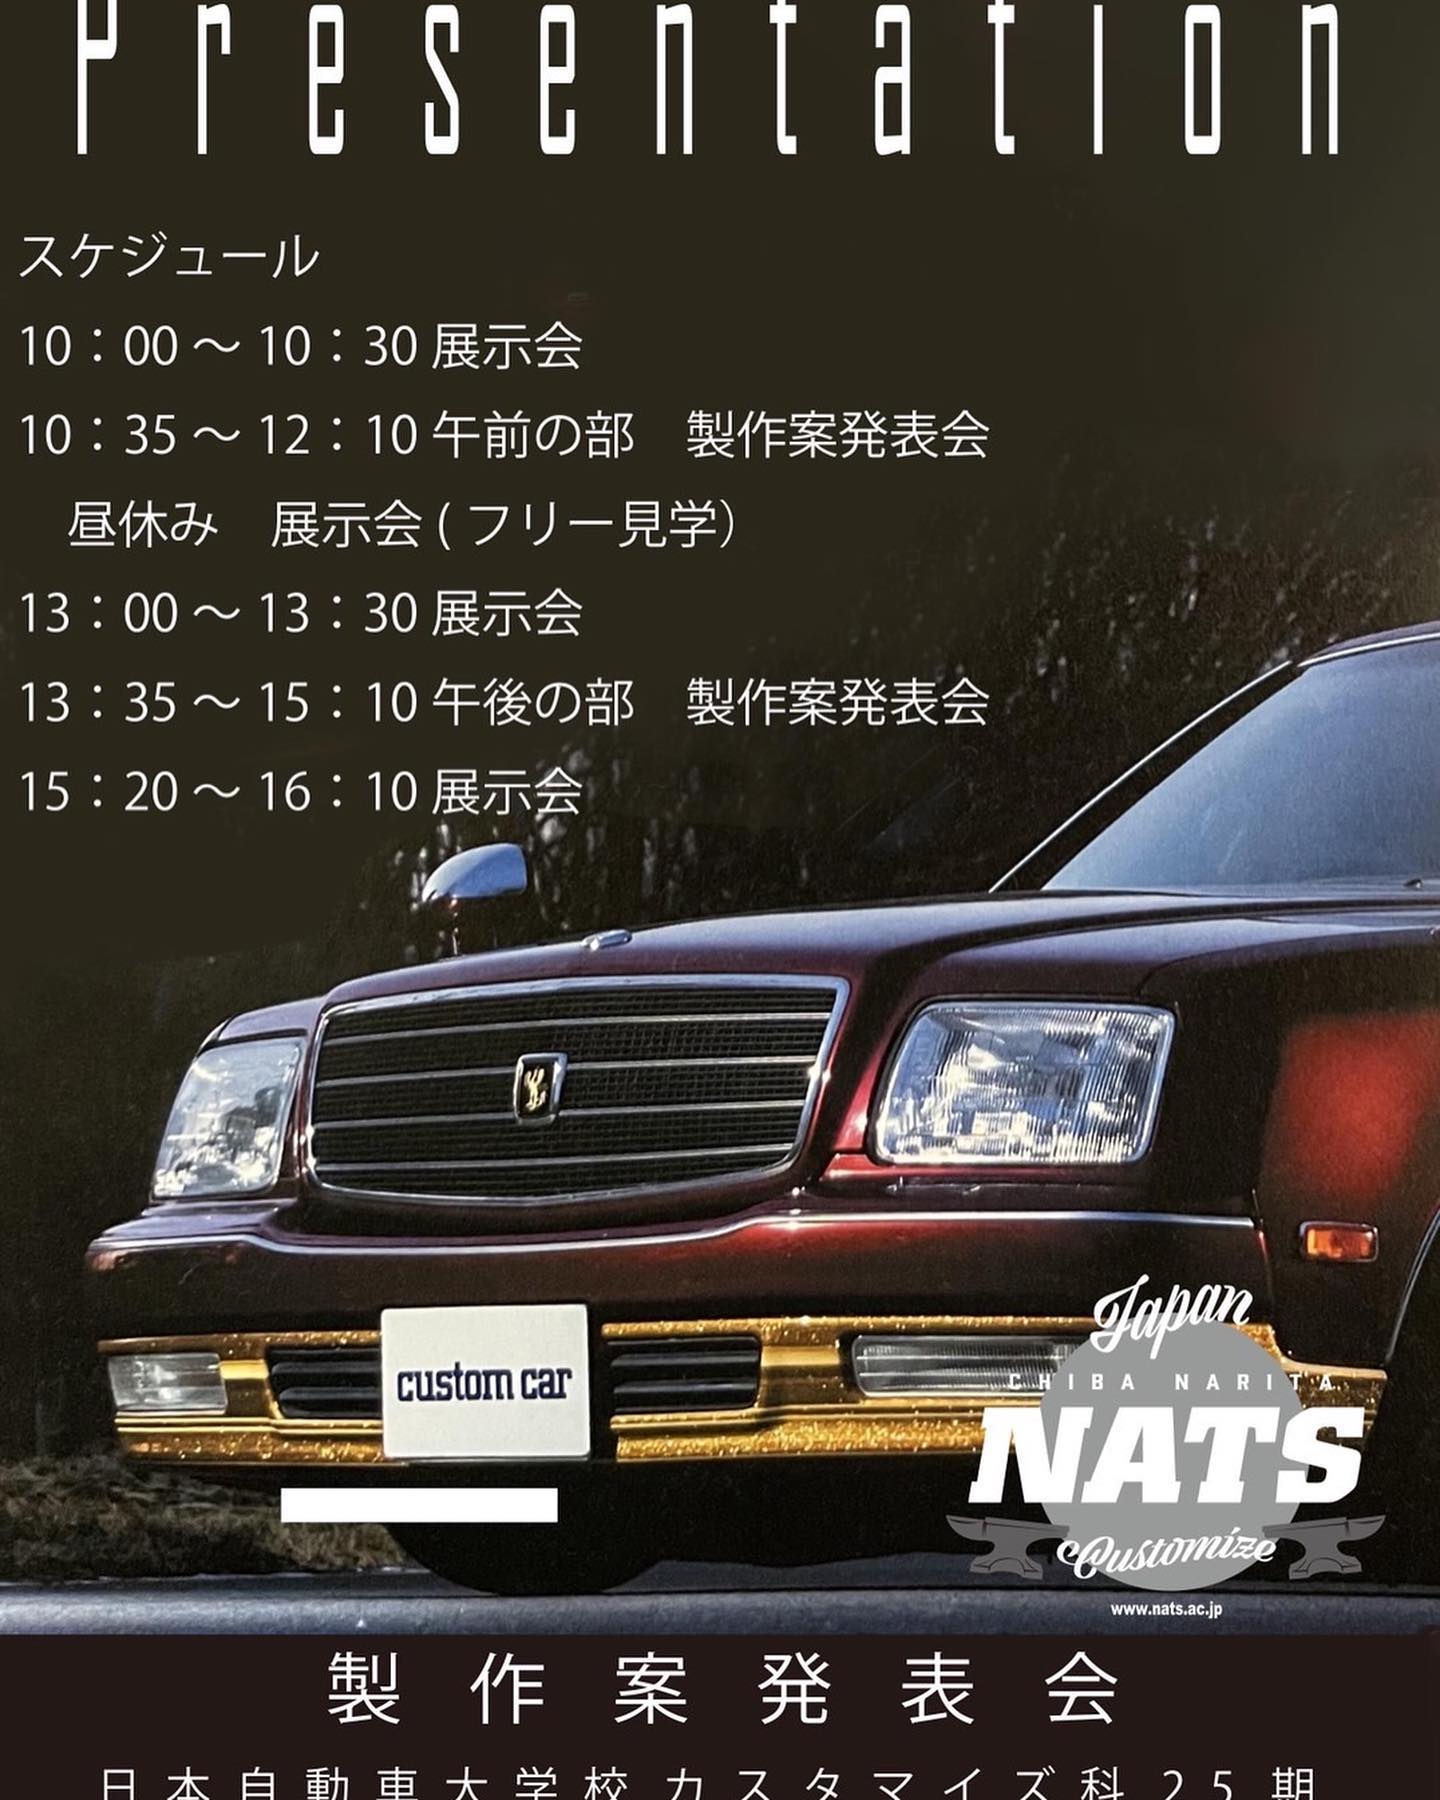 6/30昨日は#日本自動車大学校 #nats にて2023東京オートサロン出展車両制作発表会にご招待頂きまして@goldies_auto_detailing とブース出させて頂きました今年は4台の車を制作するそうですプレゼン拝見しましたがどれも楽しみです今年も @fbscustomtapes を協賛させていただきます️ジャンジャン使ってください️#日本自動車大学校 #nats #カスタマイズ科 #fbscustomtapes #千葉 #千葉北 #dmc #鈑金塗装